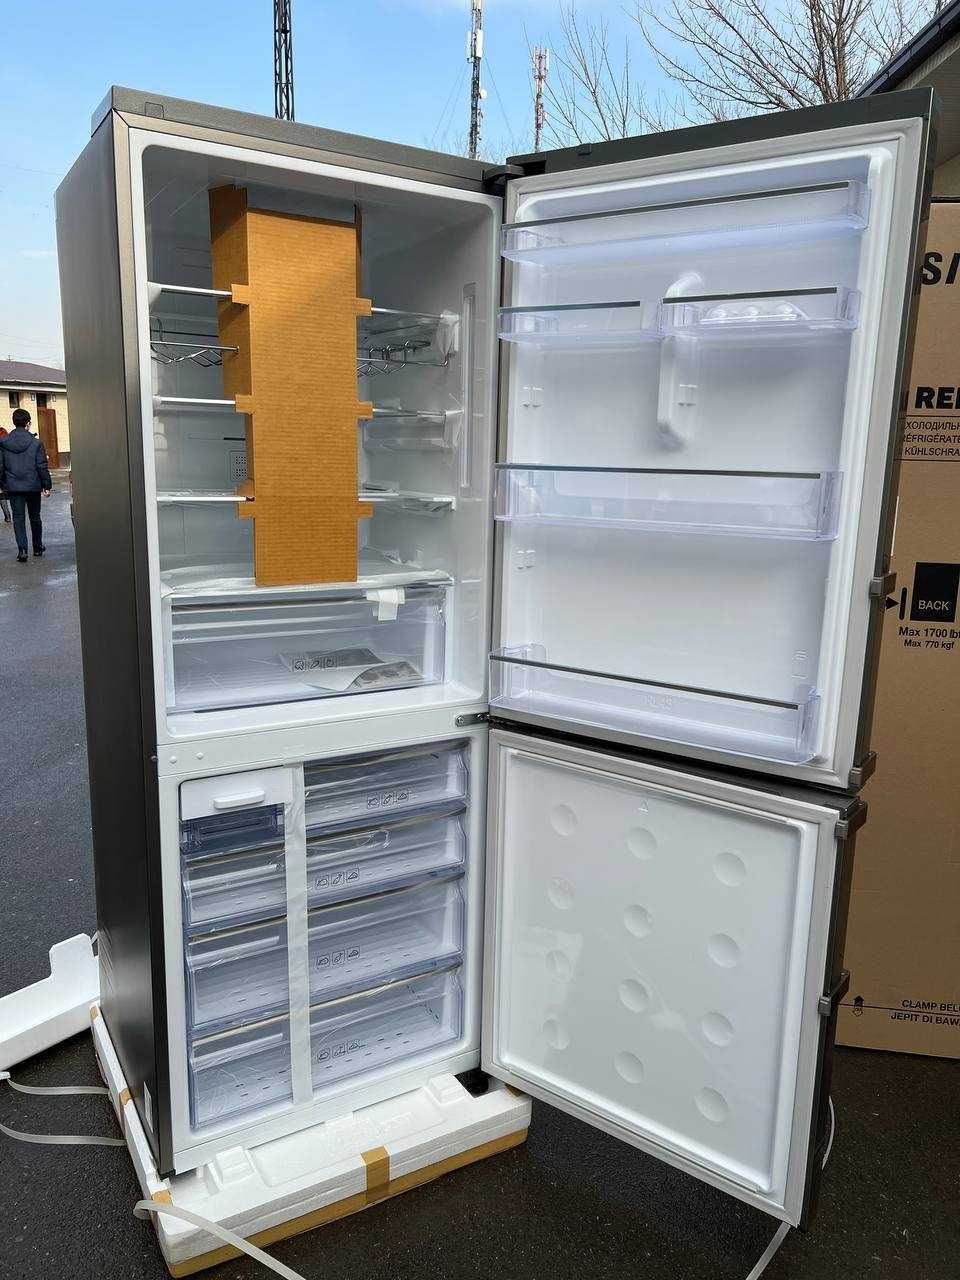 Холодильник SAMSUNG 435 л RL4353EBASL/WT